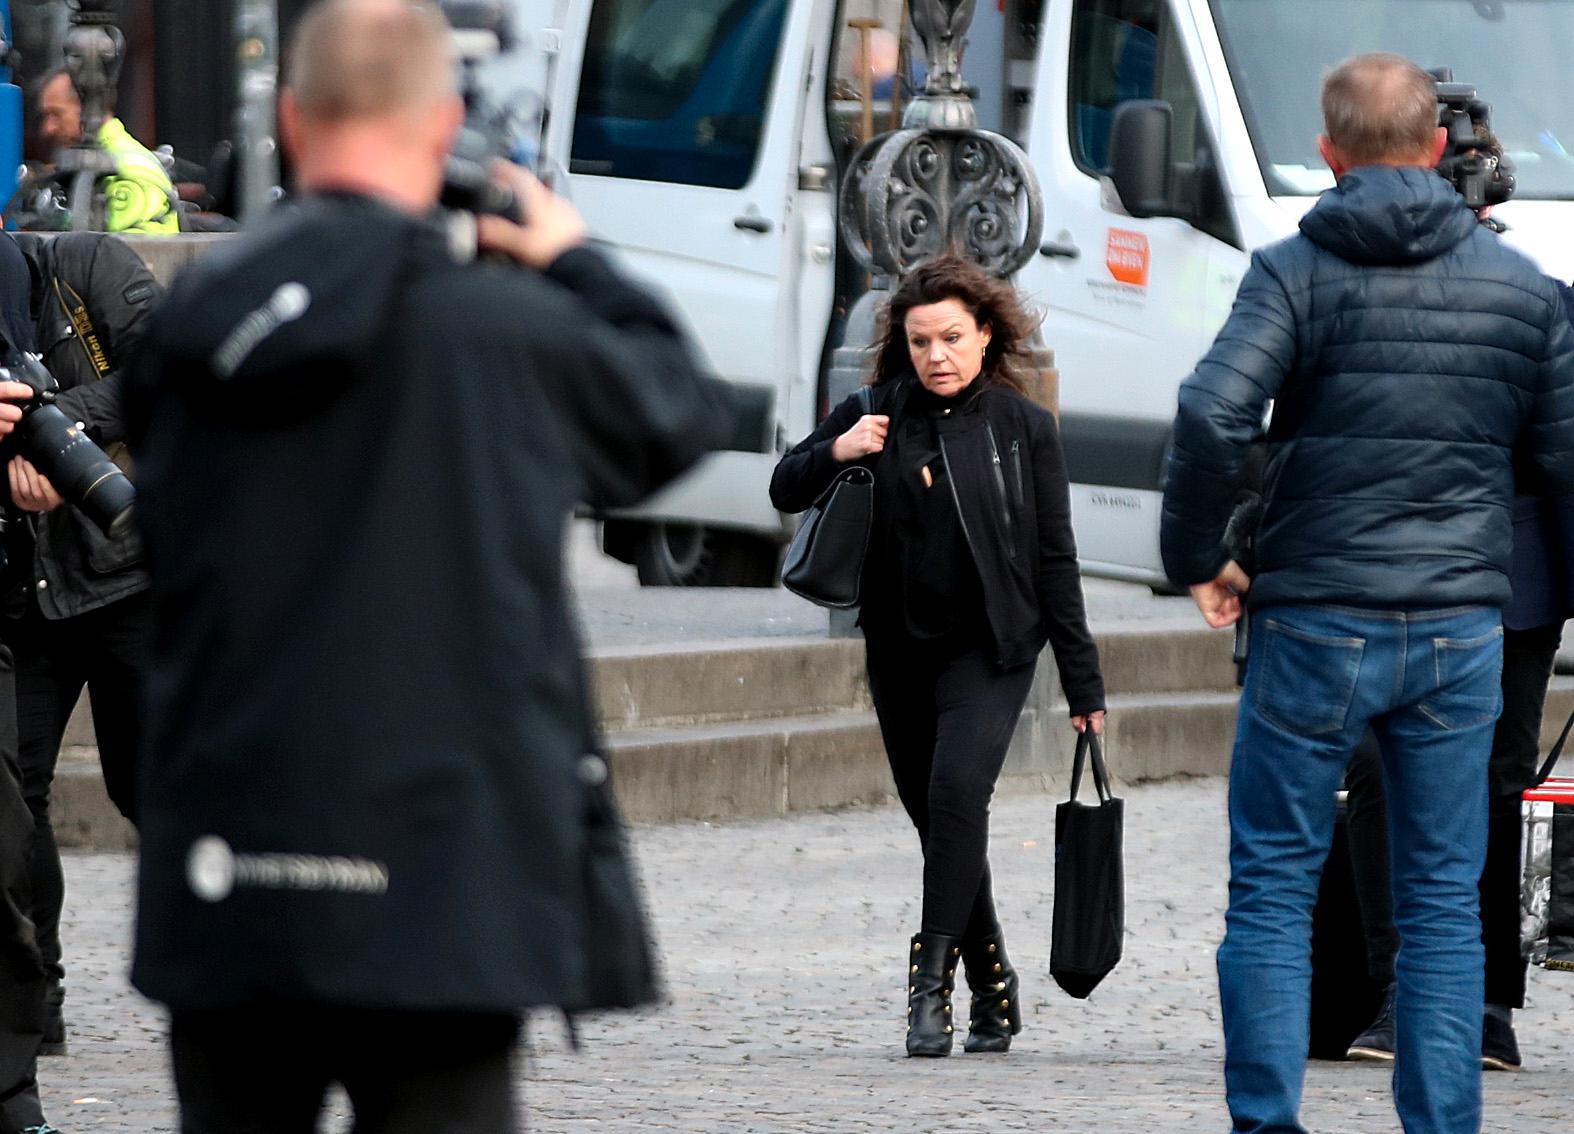 Peter Madsens advokat Betina Hald Engmark anländer till Köpenhamns byret, där rättegången mot den mordmisstänkte Peter Madsen.